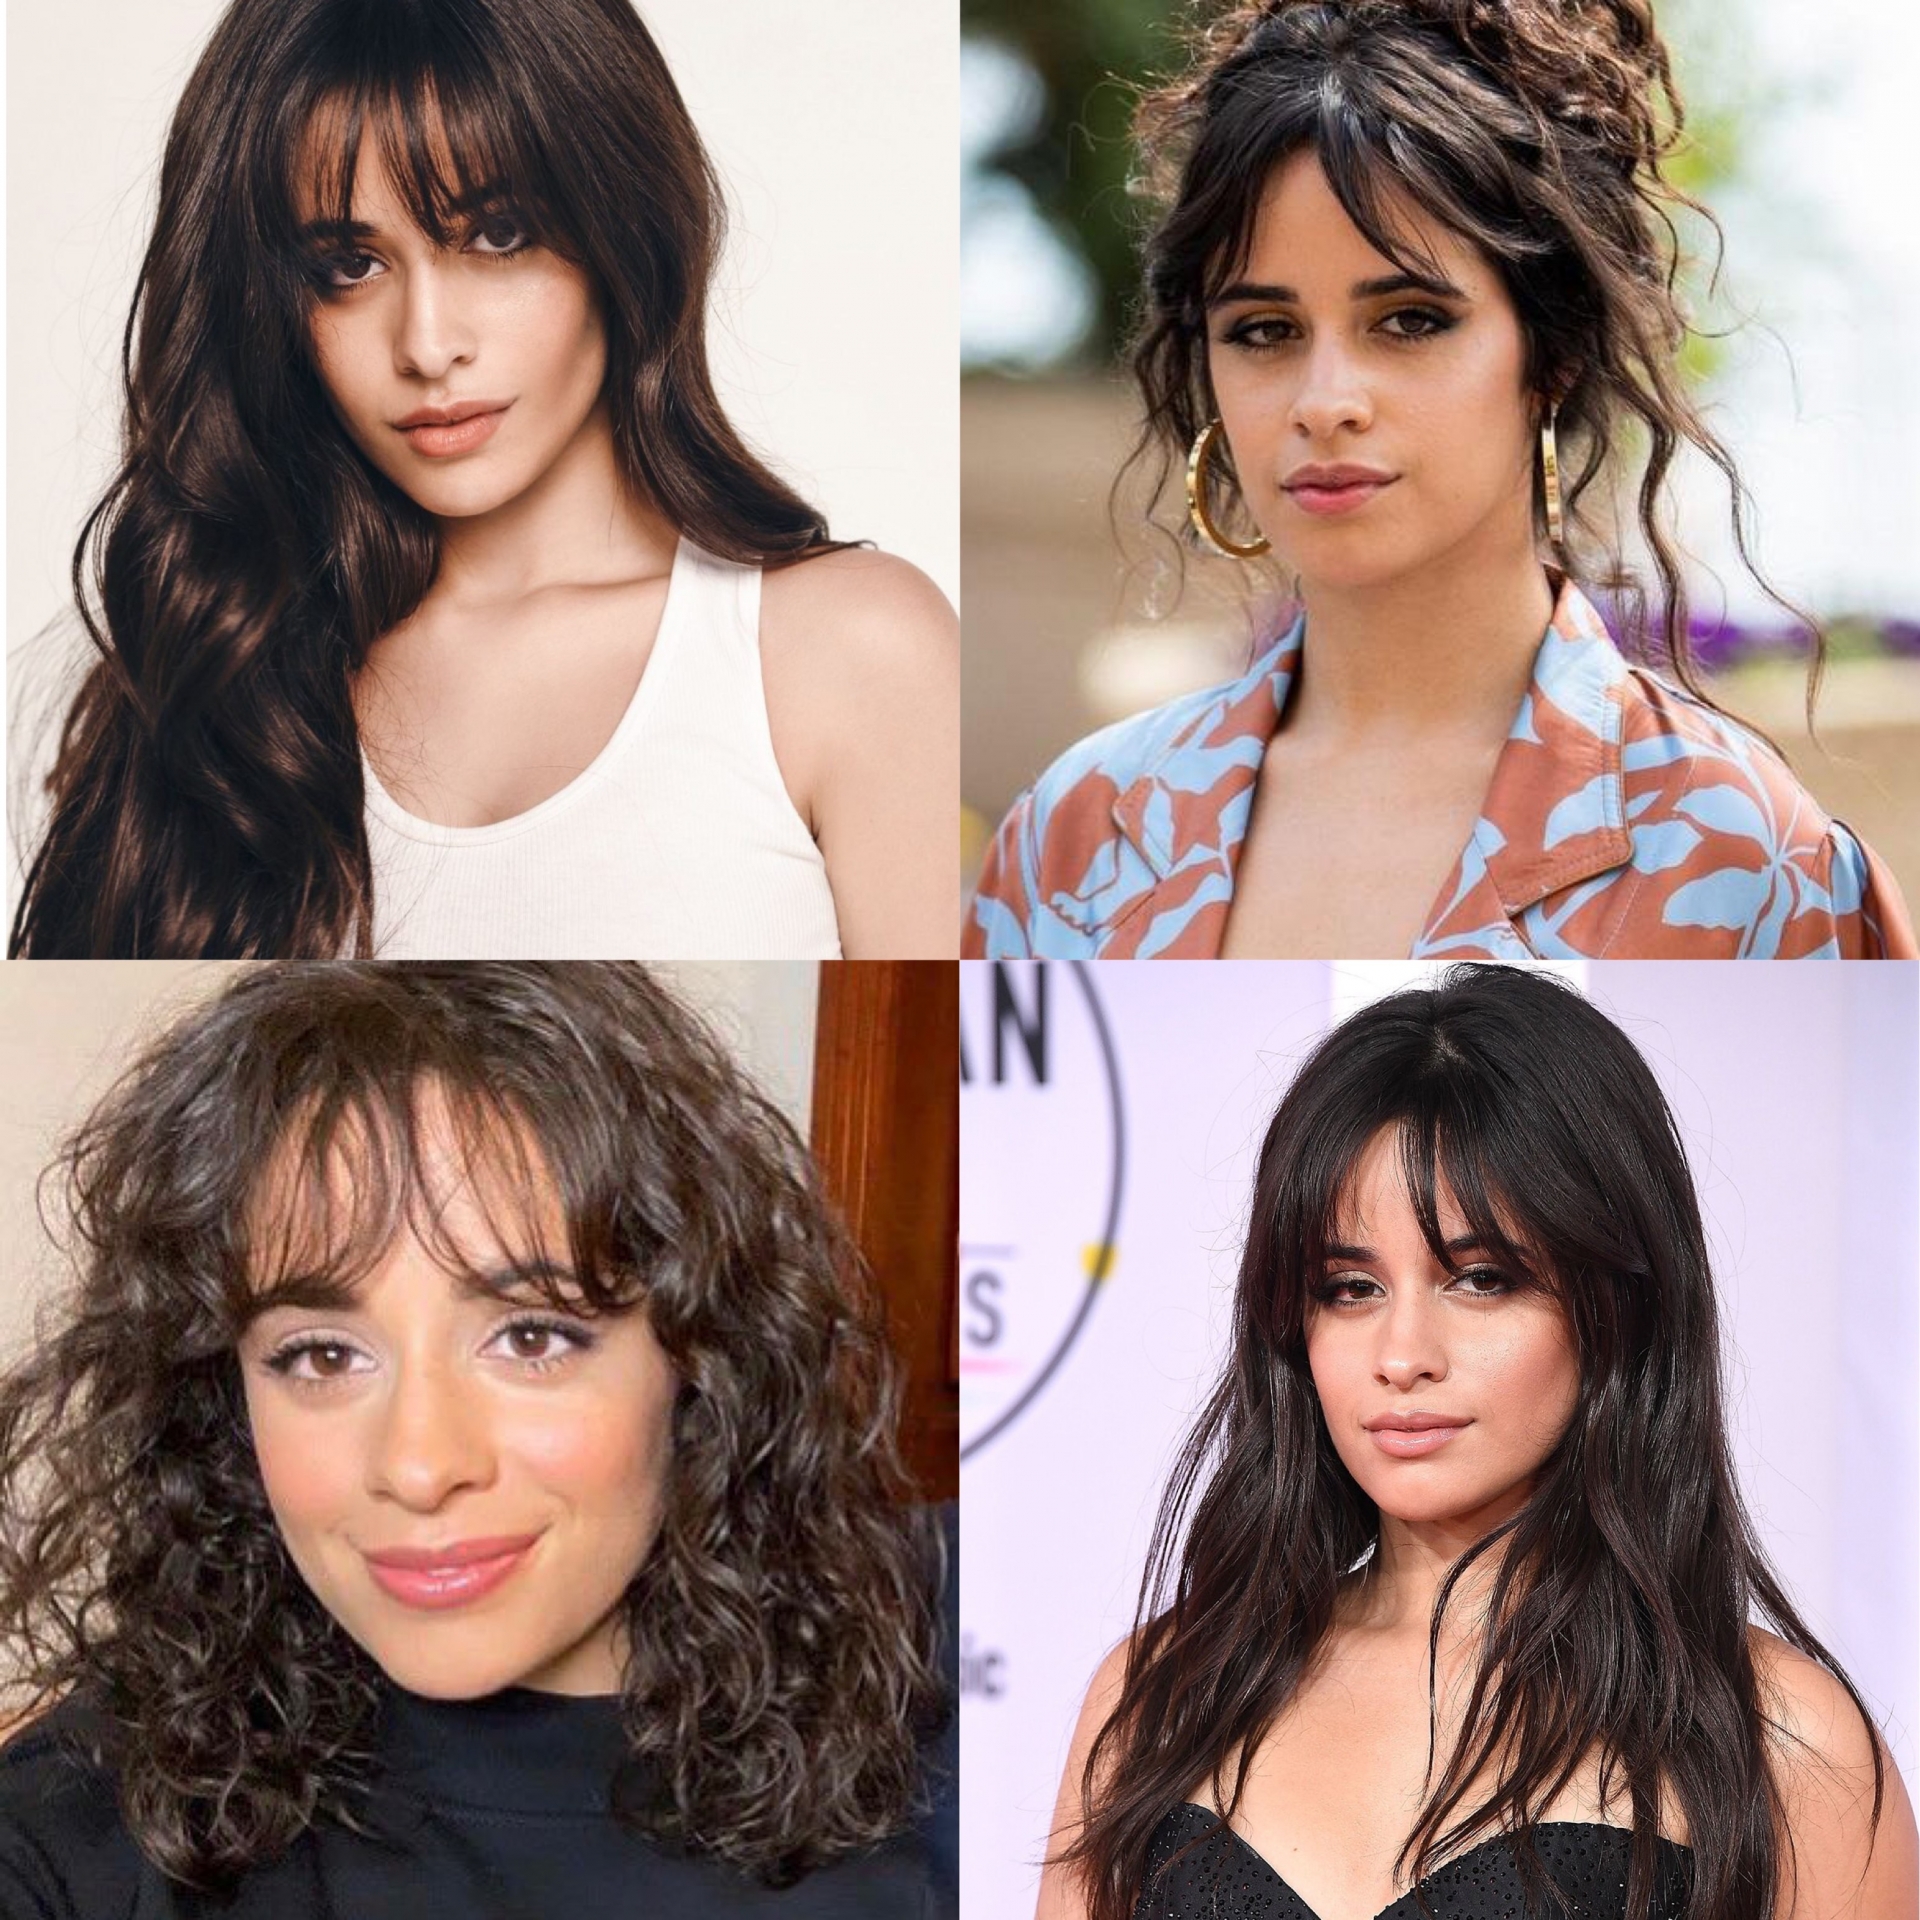 Là mỹ nhân có gu thời trang đa dạng nhưng chuyện tóc tai của Camila lại hoàn toàn khác. Từ khi debut đến nay, cô nàng vẫn luôn gắn bó với mái tóc nâu đen, xoăn xù và đôi khi chỉ dám 'đổi gió' bằng cách cắt ngắn, duỗi thẳng hoặc búi cao mà thôi. Cũng vì thế mà màn 'biến hình' lần này của Camila lại khiến netizen ngỡ ngàng đến vậy.